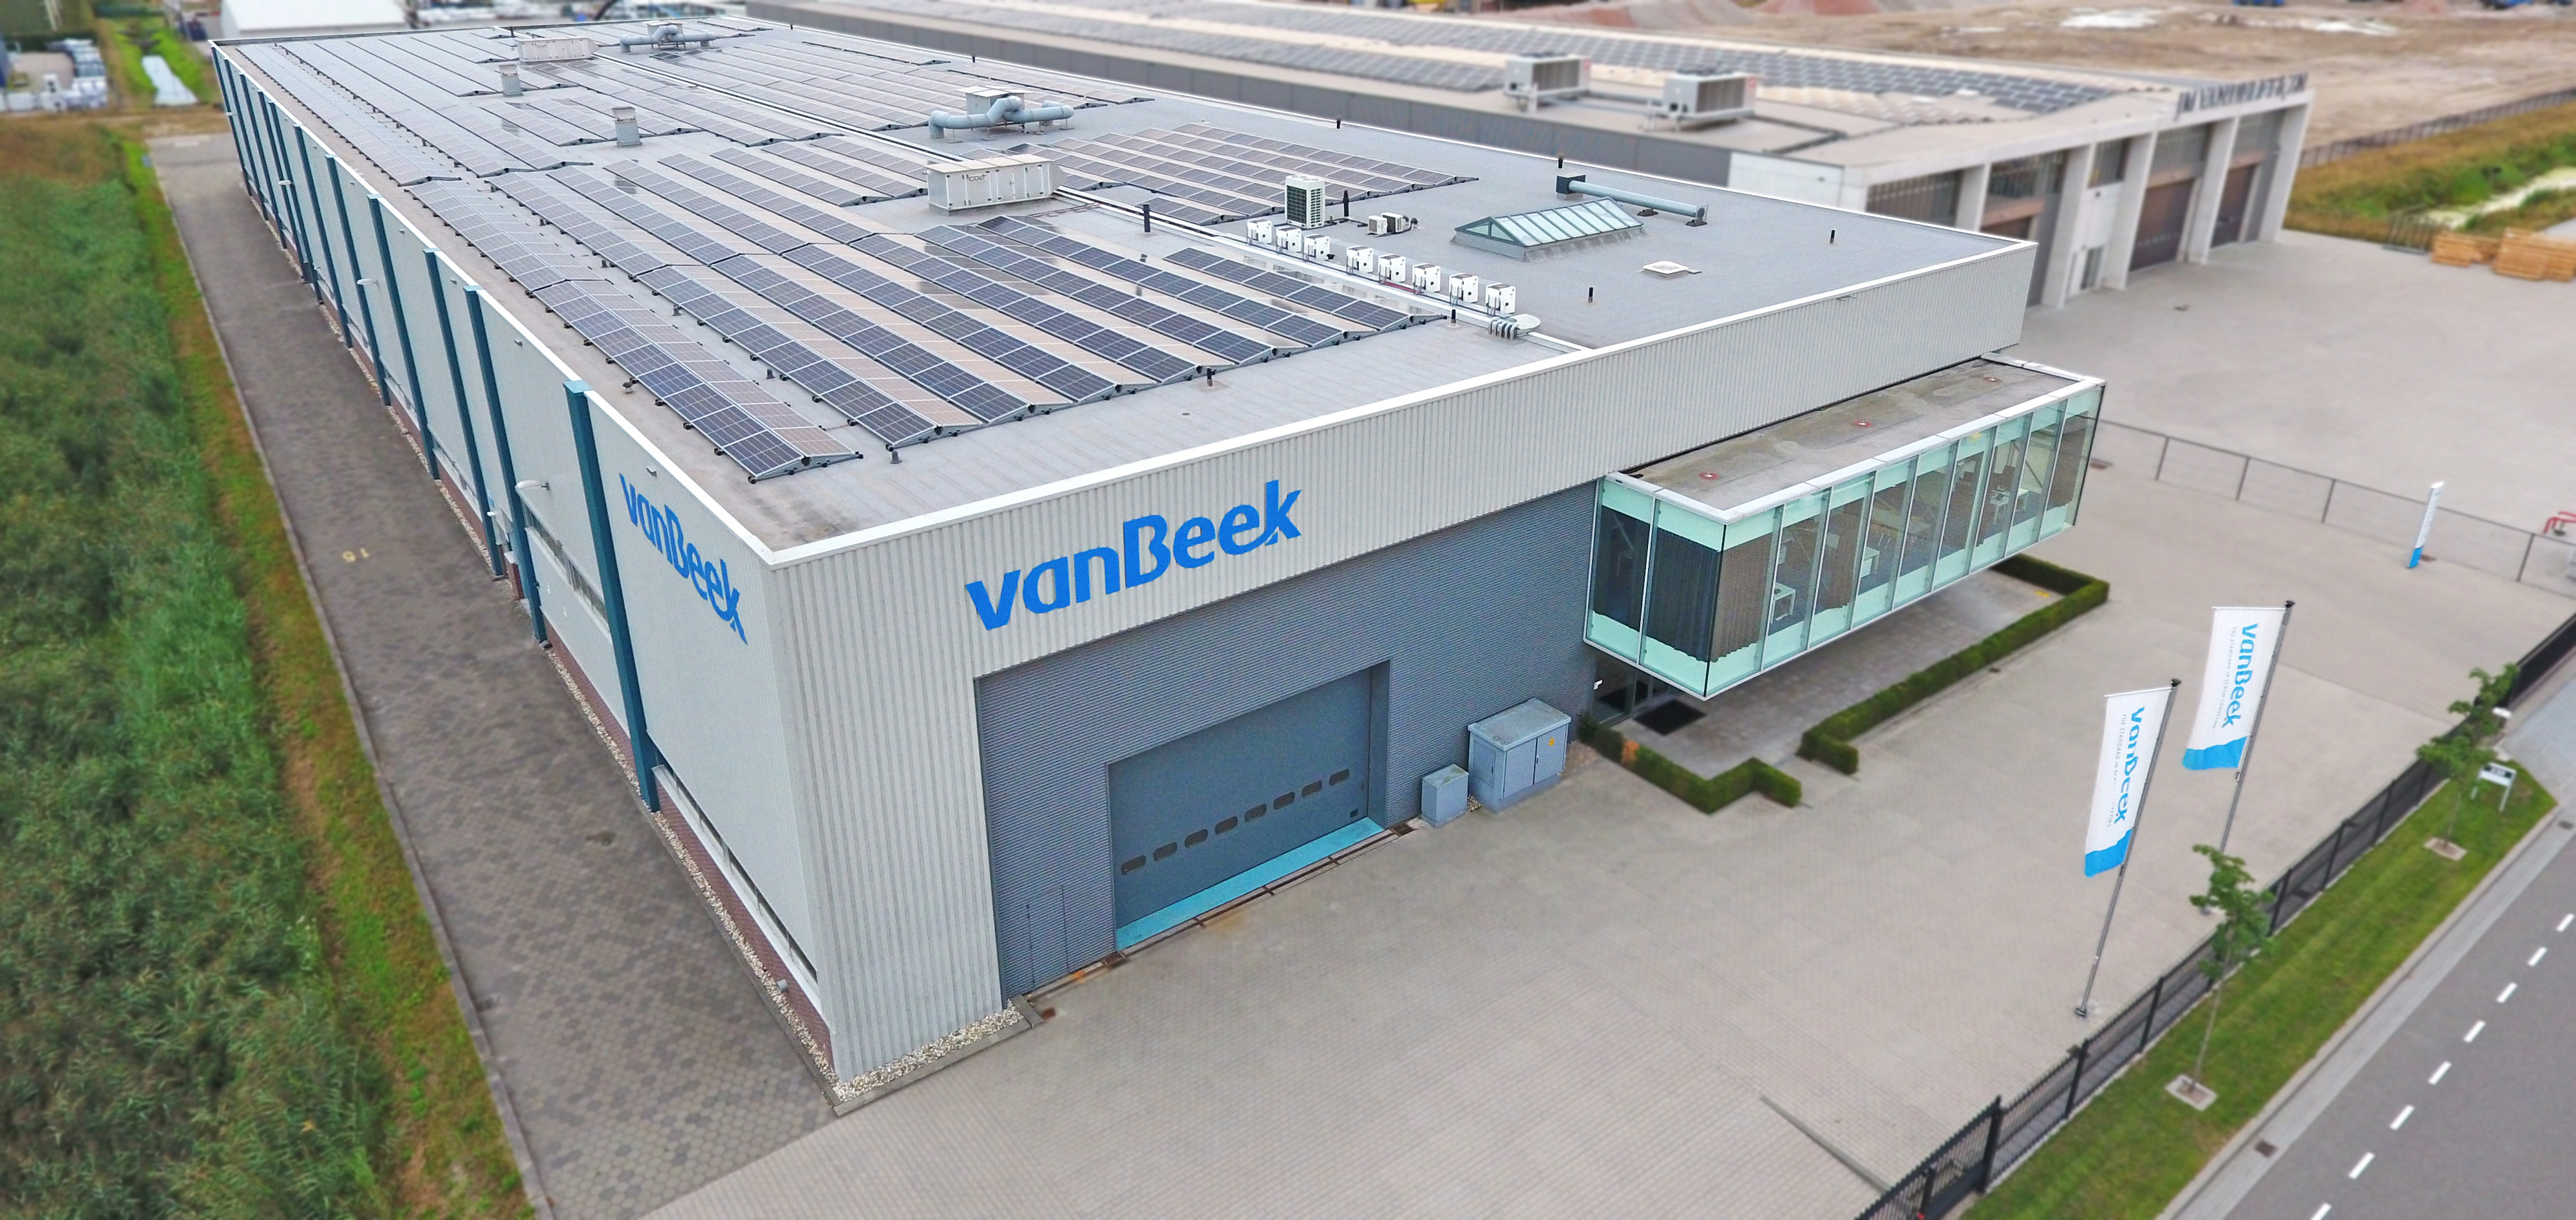 Aerial photo of the van Beek plant